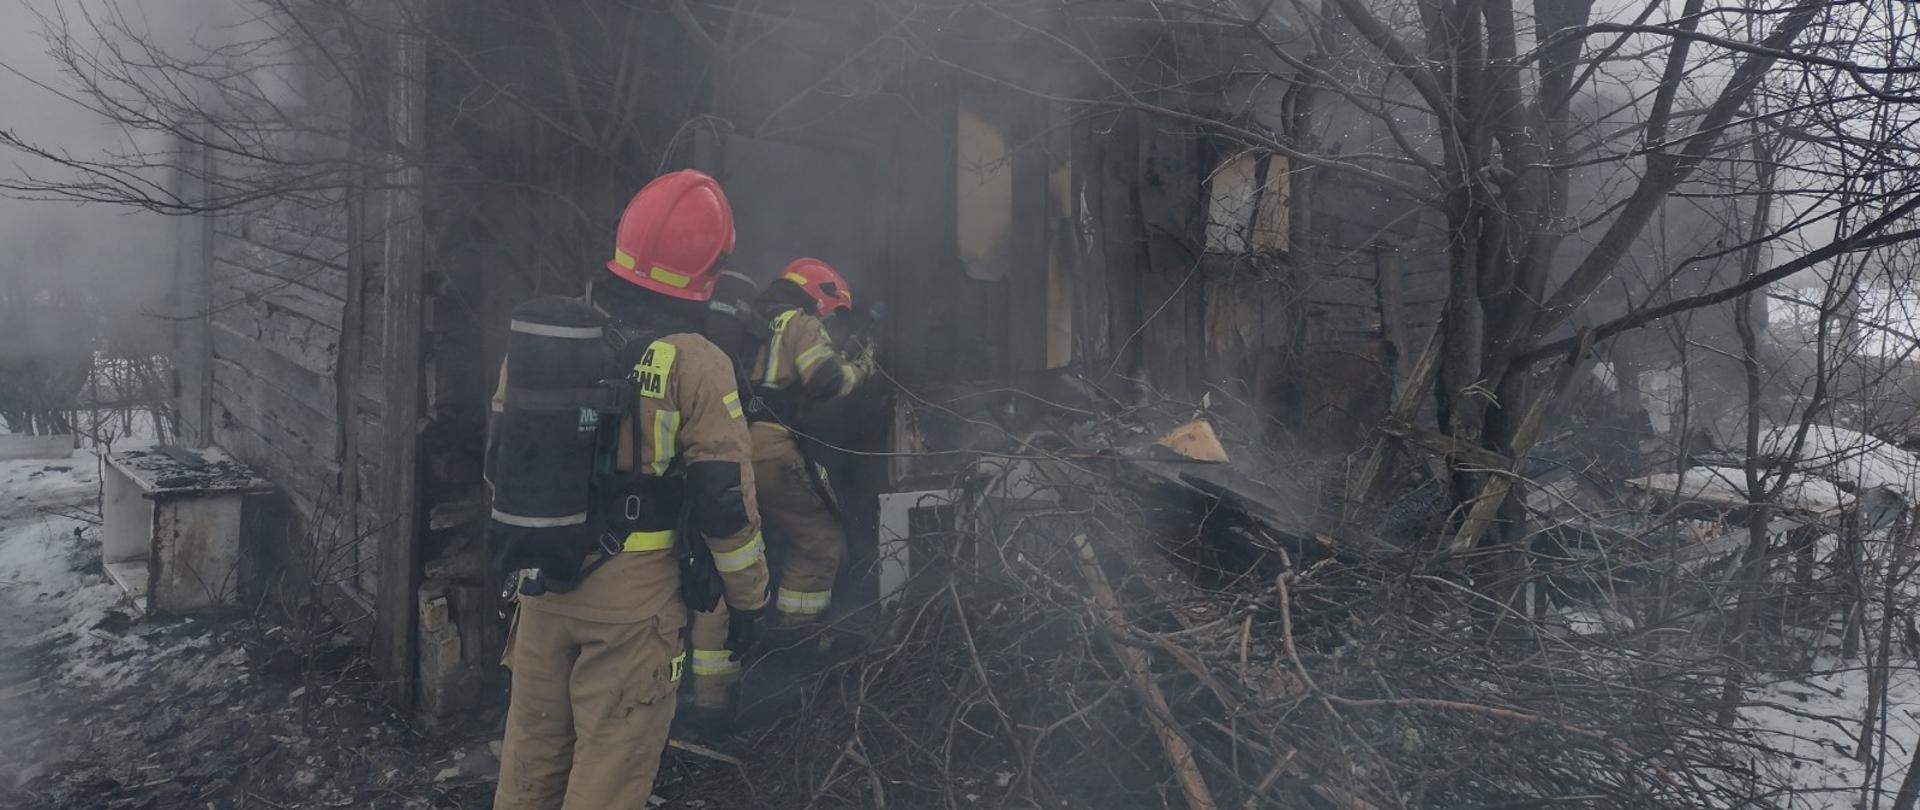 Na zdjęciu w porze dziennej widać dwóch strażaków przed budynkiem drewnianym, którzy gaszą wodą pożar. Na zdjęciu panuje silne zadymienie na zewnątrz.